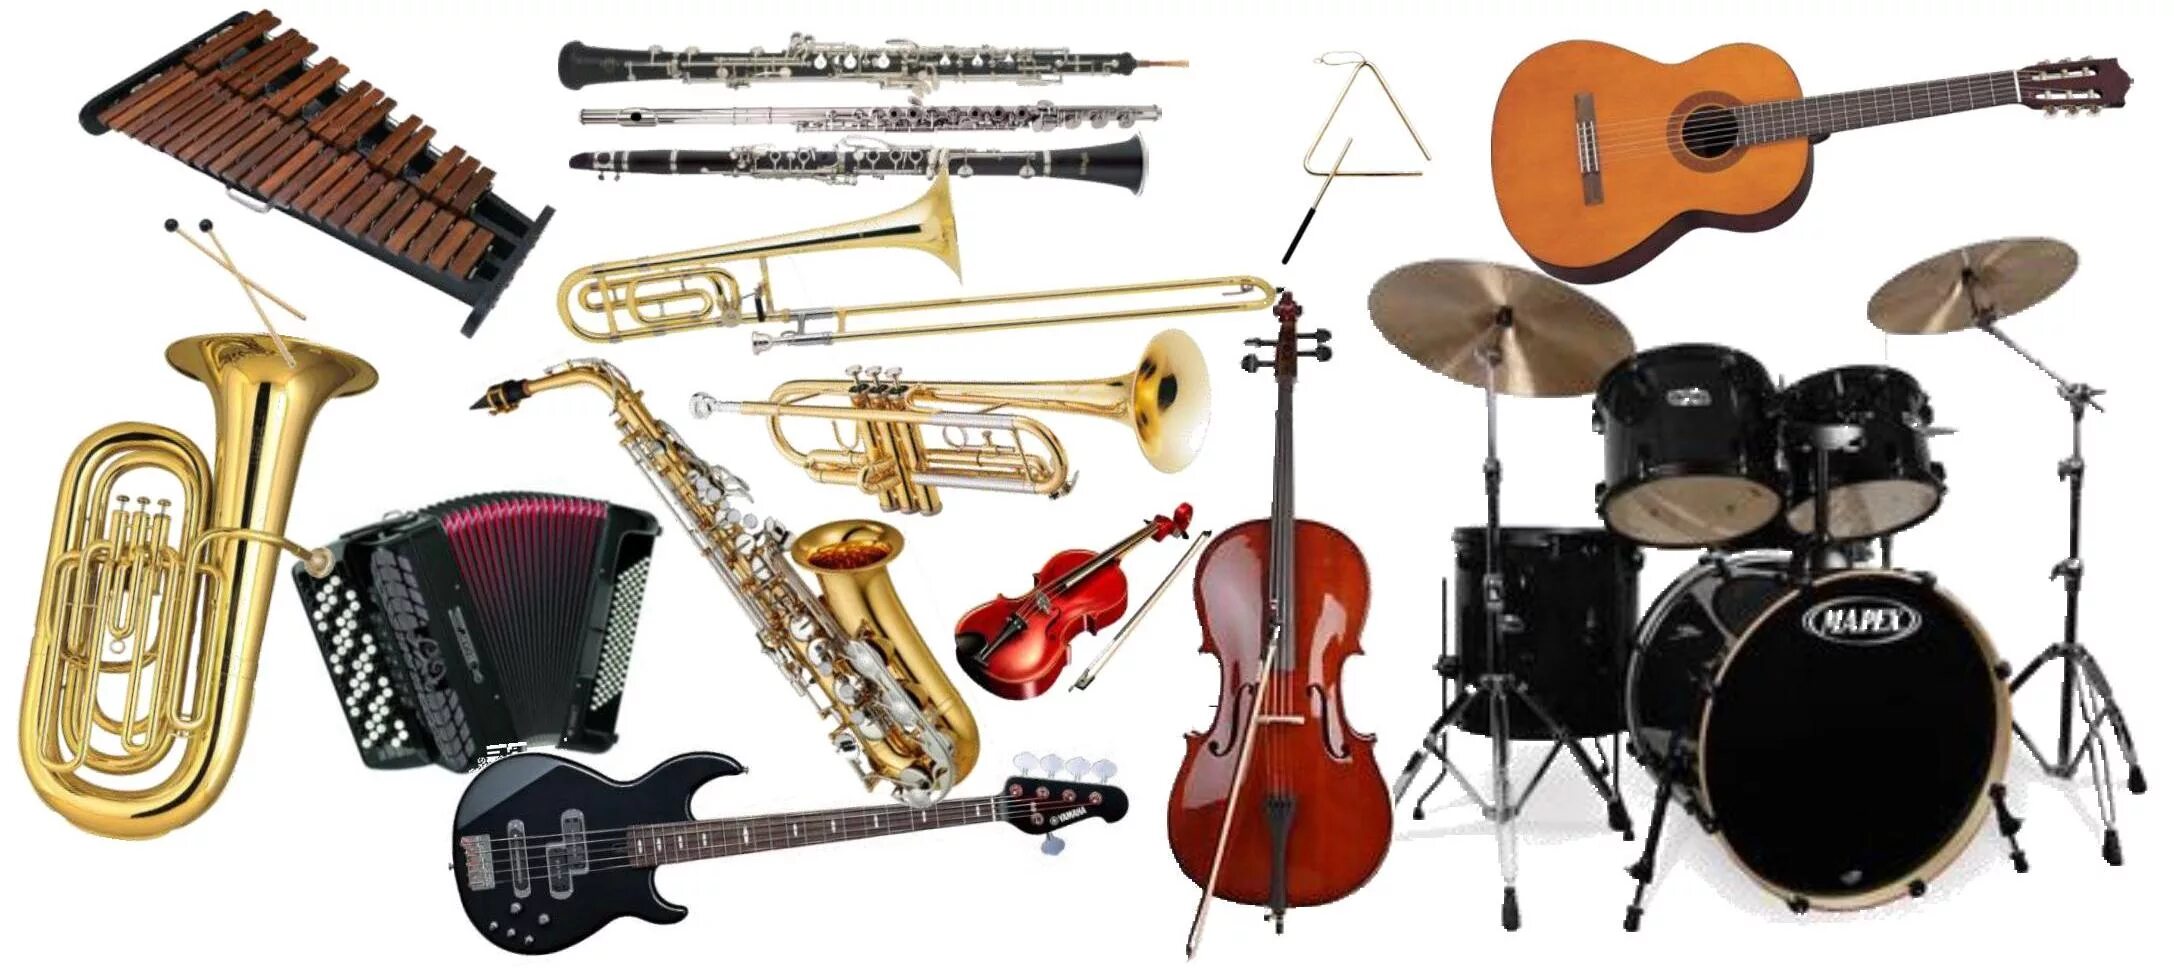 Музыкальные инструменты. Разные музыкальные инструменты. Много музыкальных инструментов. Инструменты эстрадного оркестра. Магазин музыкальных инструментов скрипка